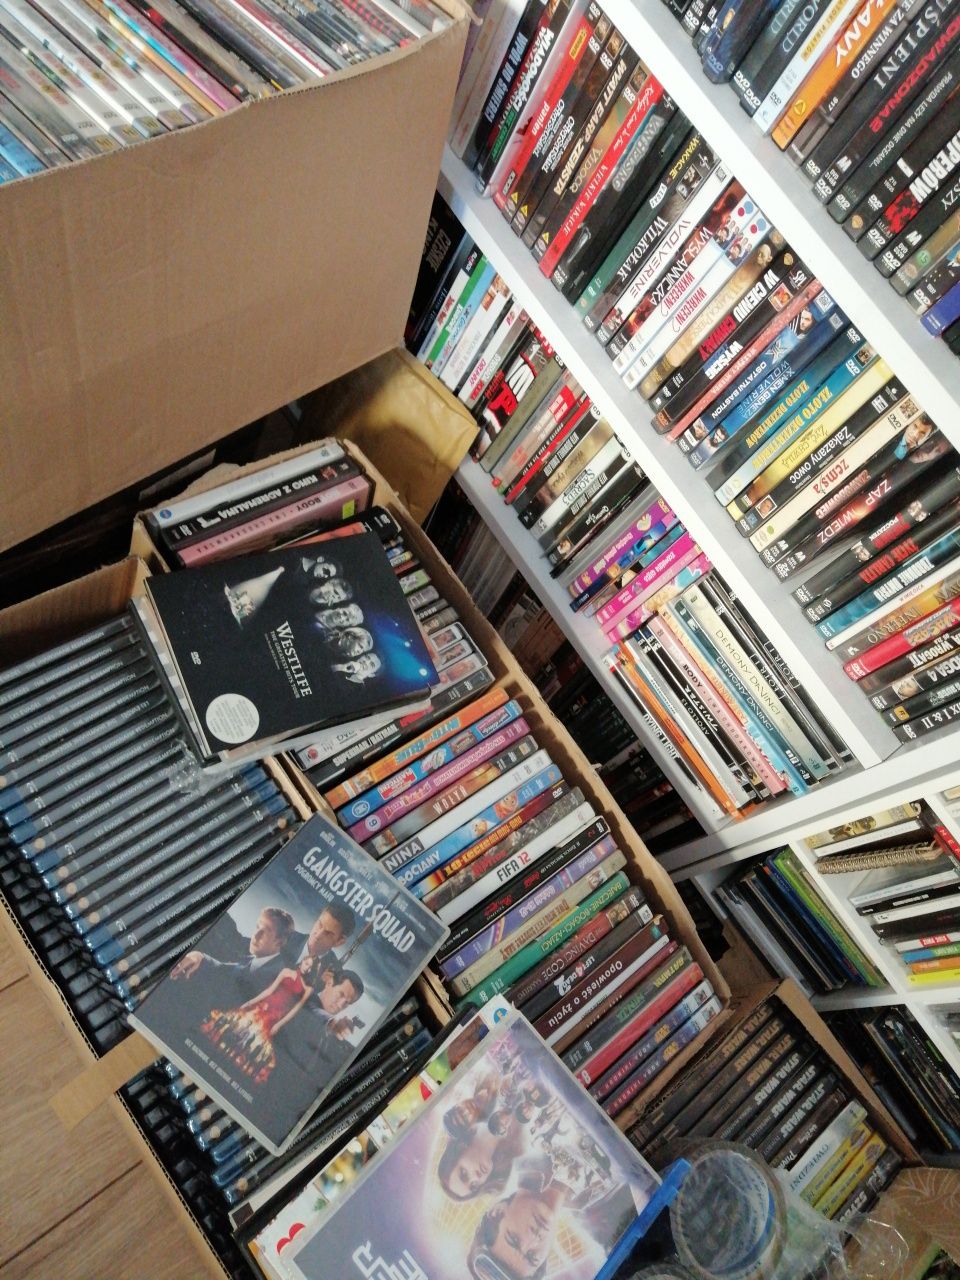 Skup płyt CD, filmy dvd, filmów blu ray, muzyczne plyty, muzyka cd..